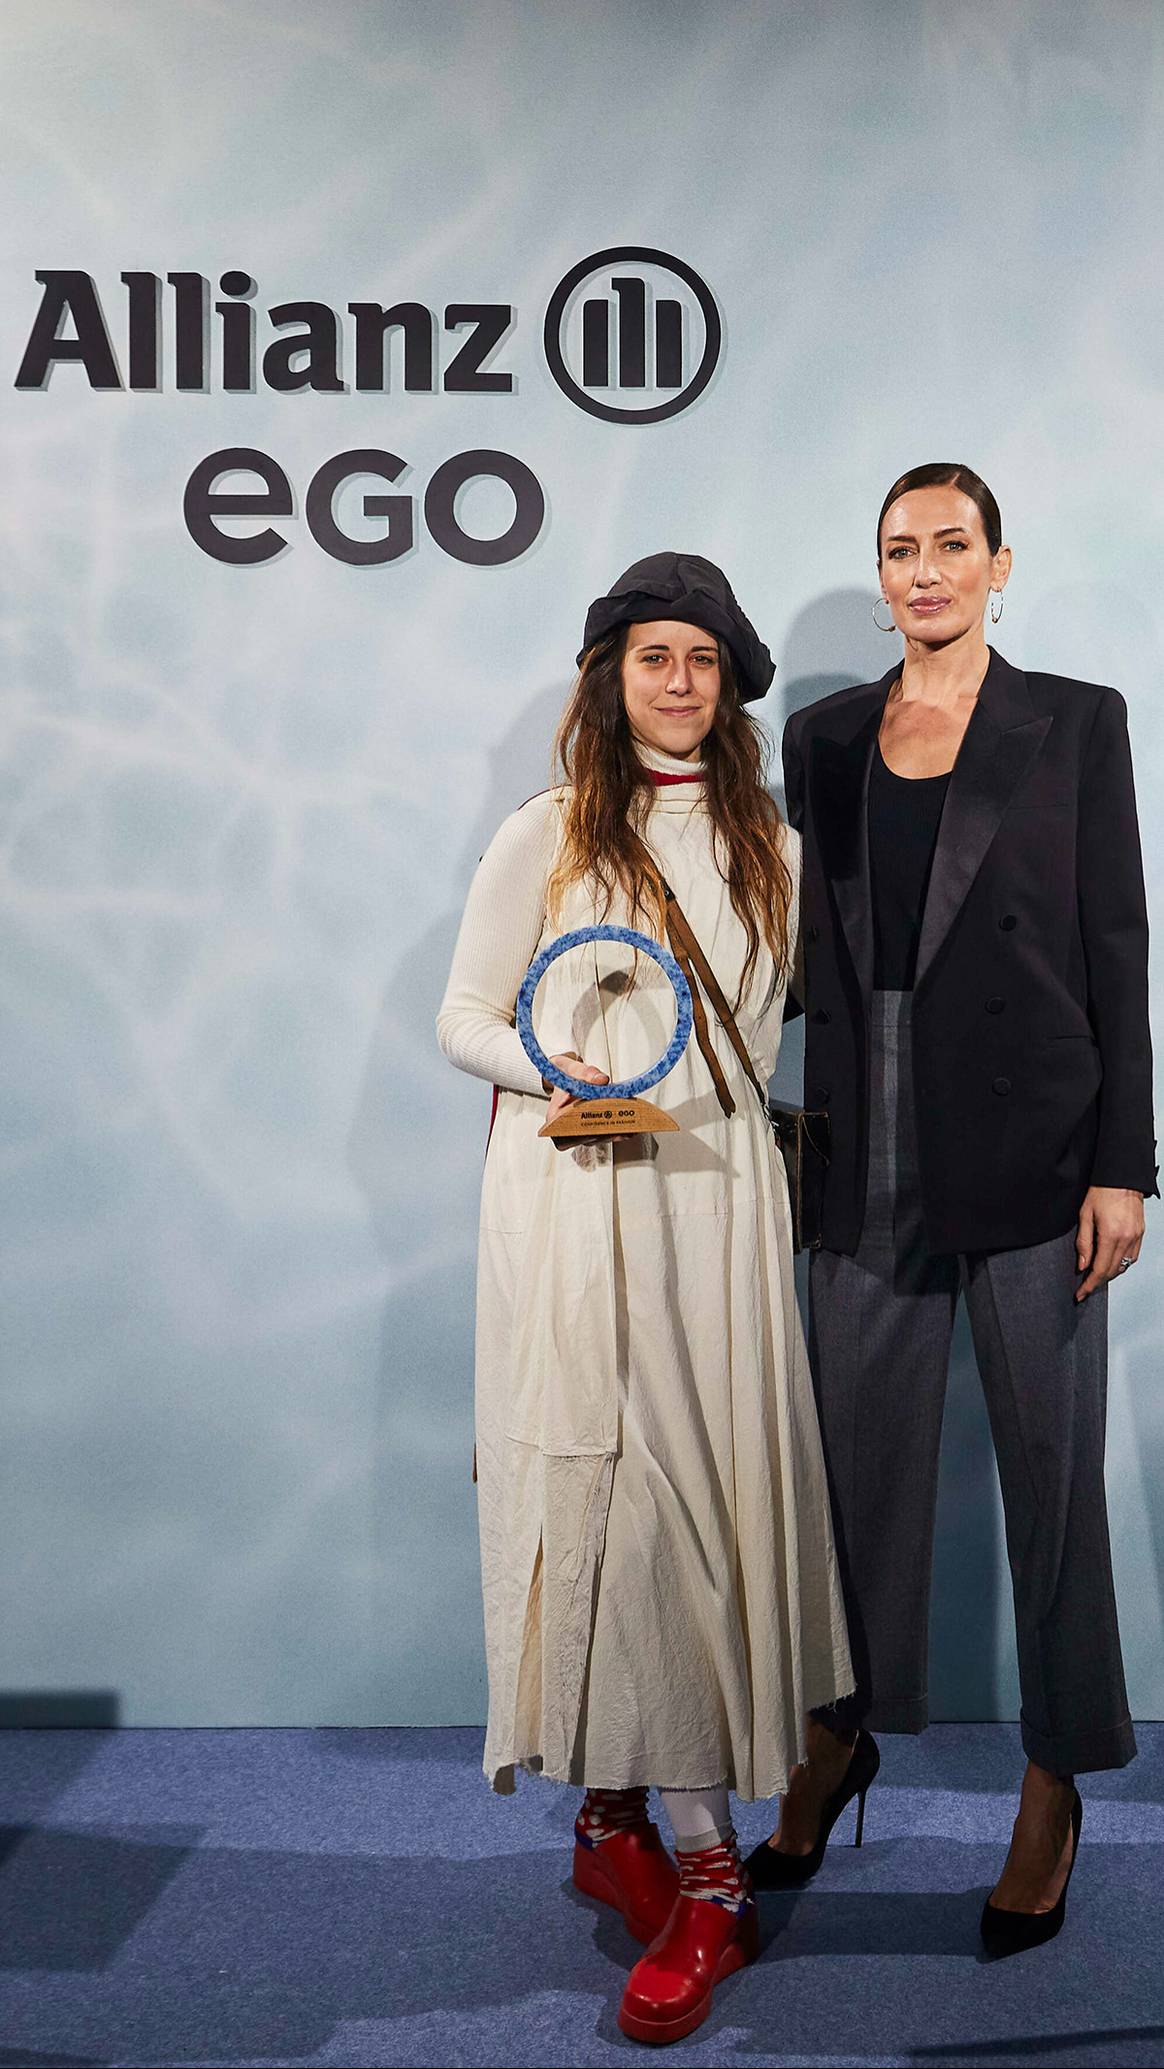 Photo Credits: Tíscar Espadas junto a la modelo y presentadora Nieves Álvarez, miembro del jurado de esta edición del premio Allianz EGO Confidence in Fashion. Fotografía de cortesía.